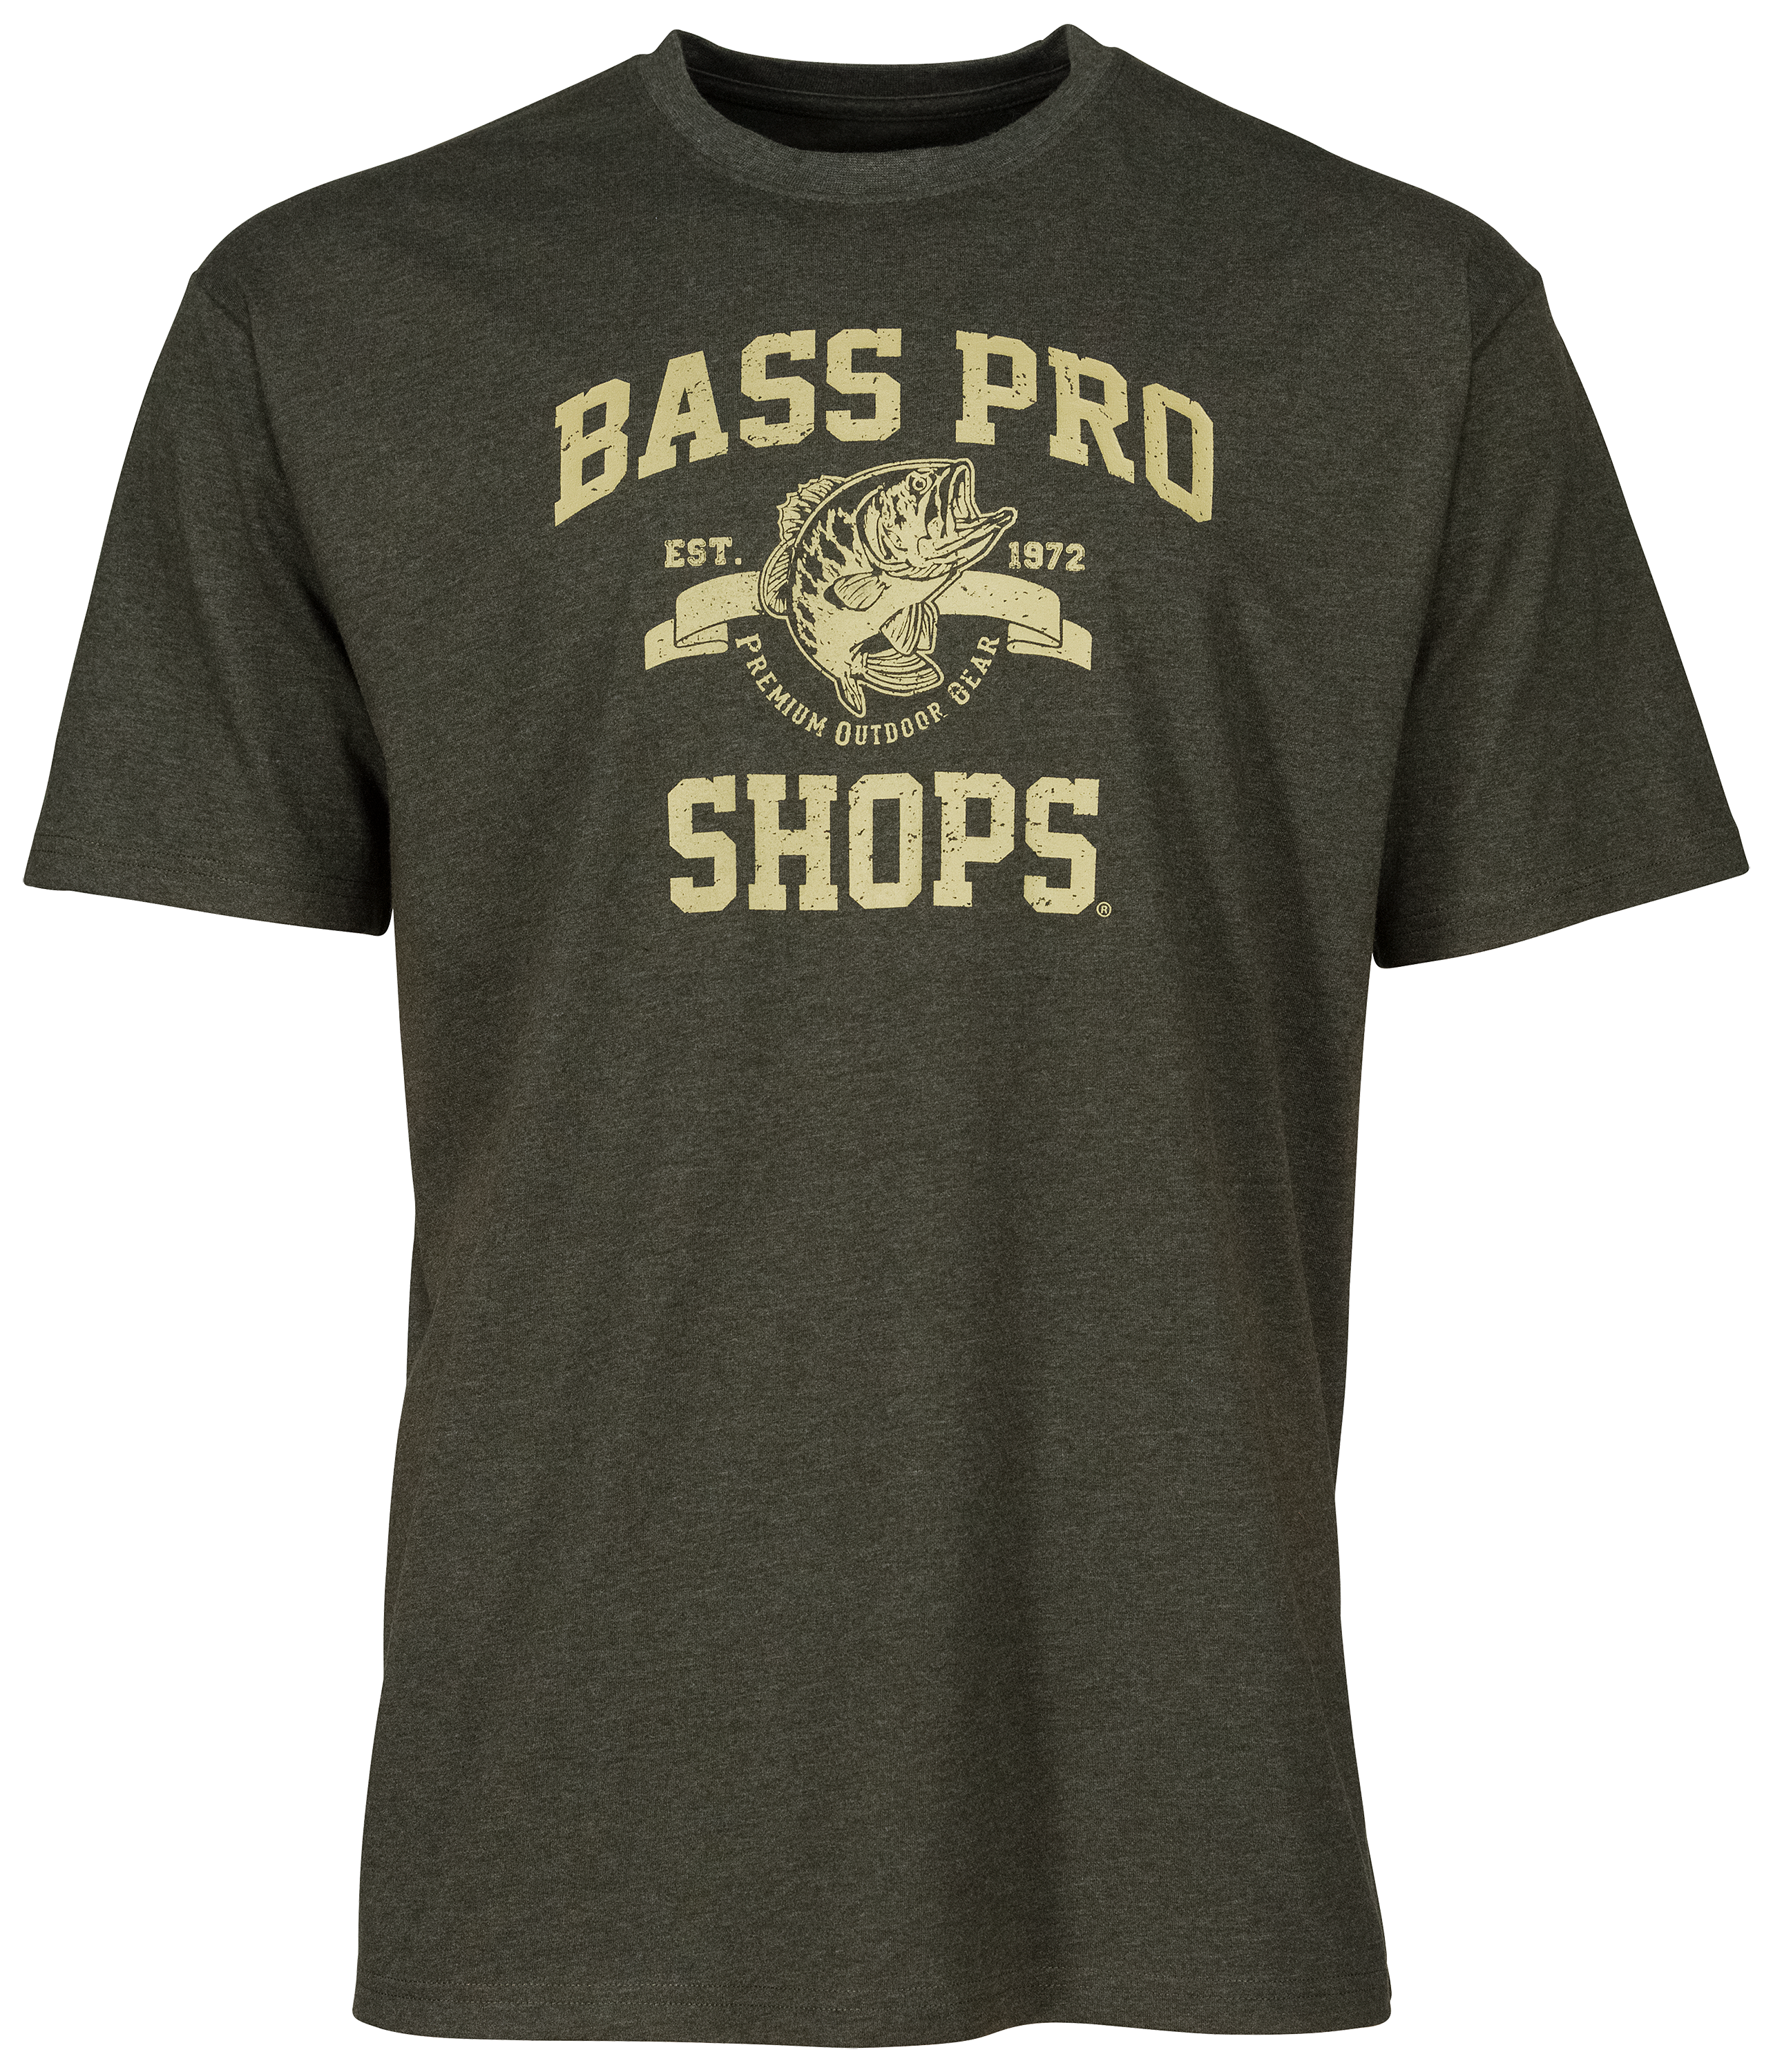 Bass Pro Shops 1972 Logo T-Shirt for Men - Navy - M